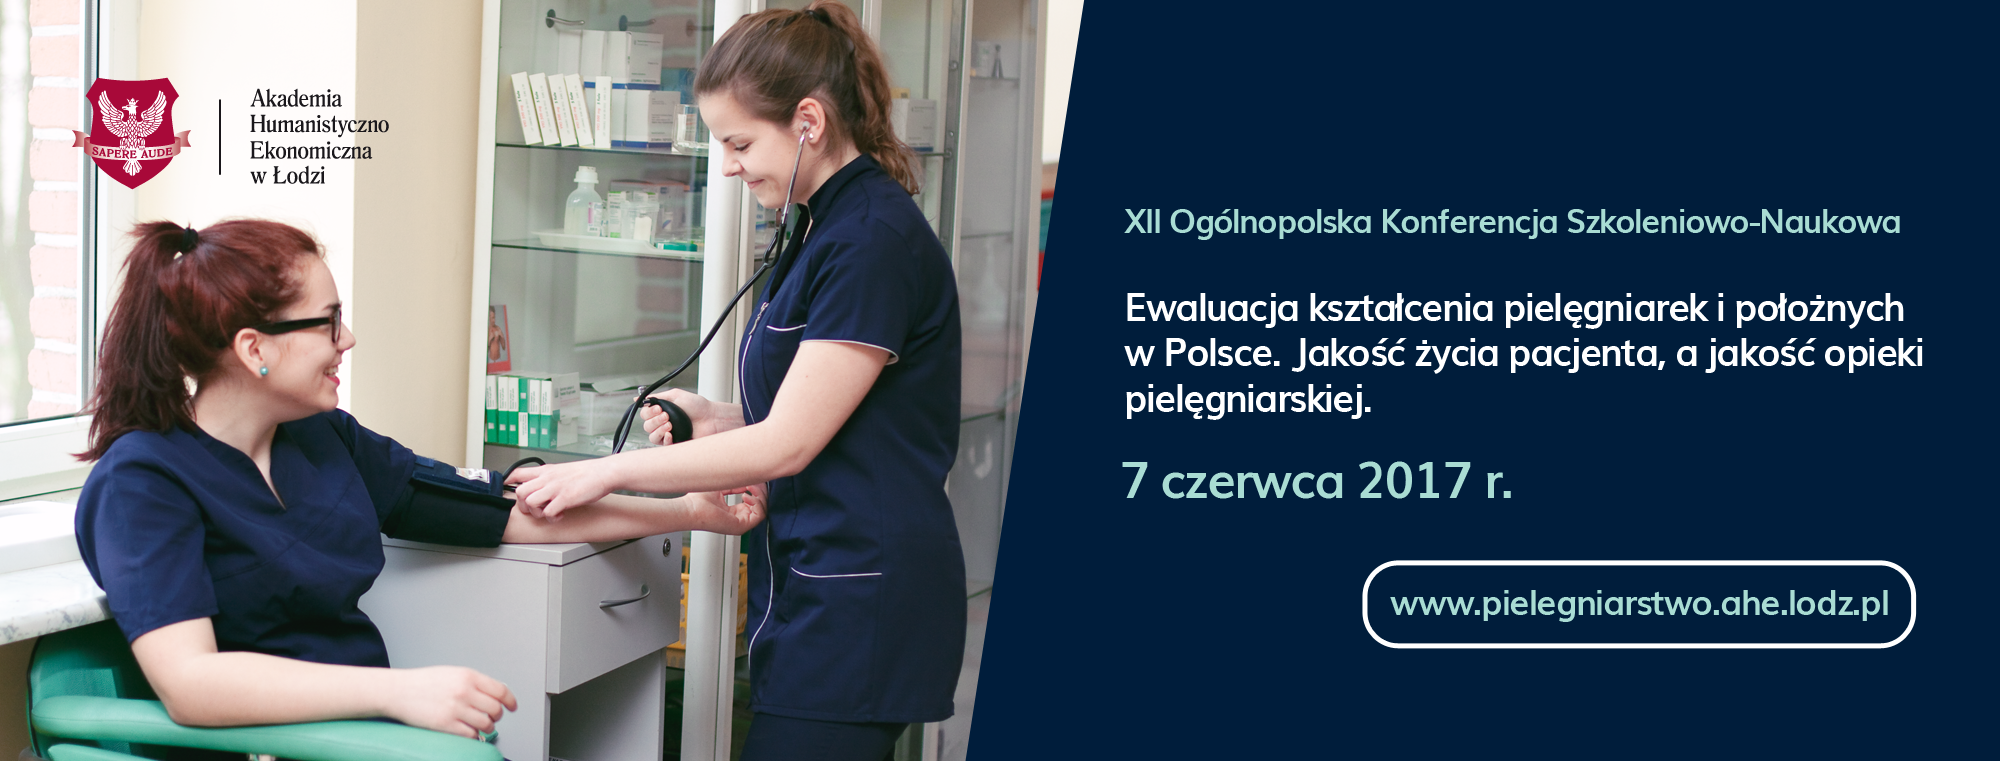 „Ewaluacja kształcenia pielęgniarek i położnych w Polsce. Jakość życia pacjenta, a jakość opieki pielęgniarskiej”